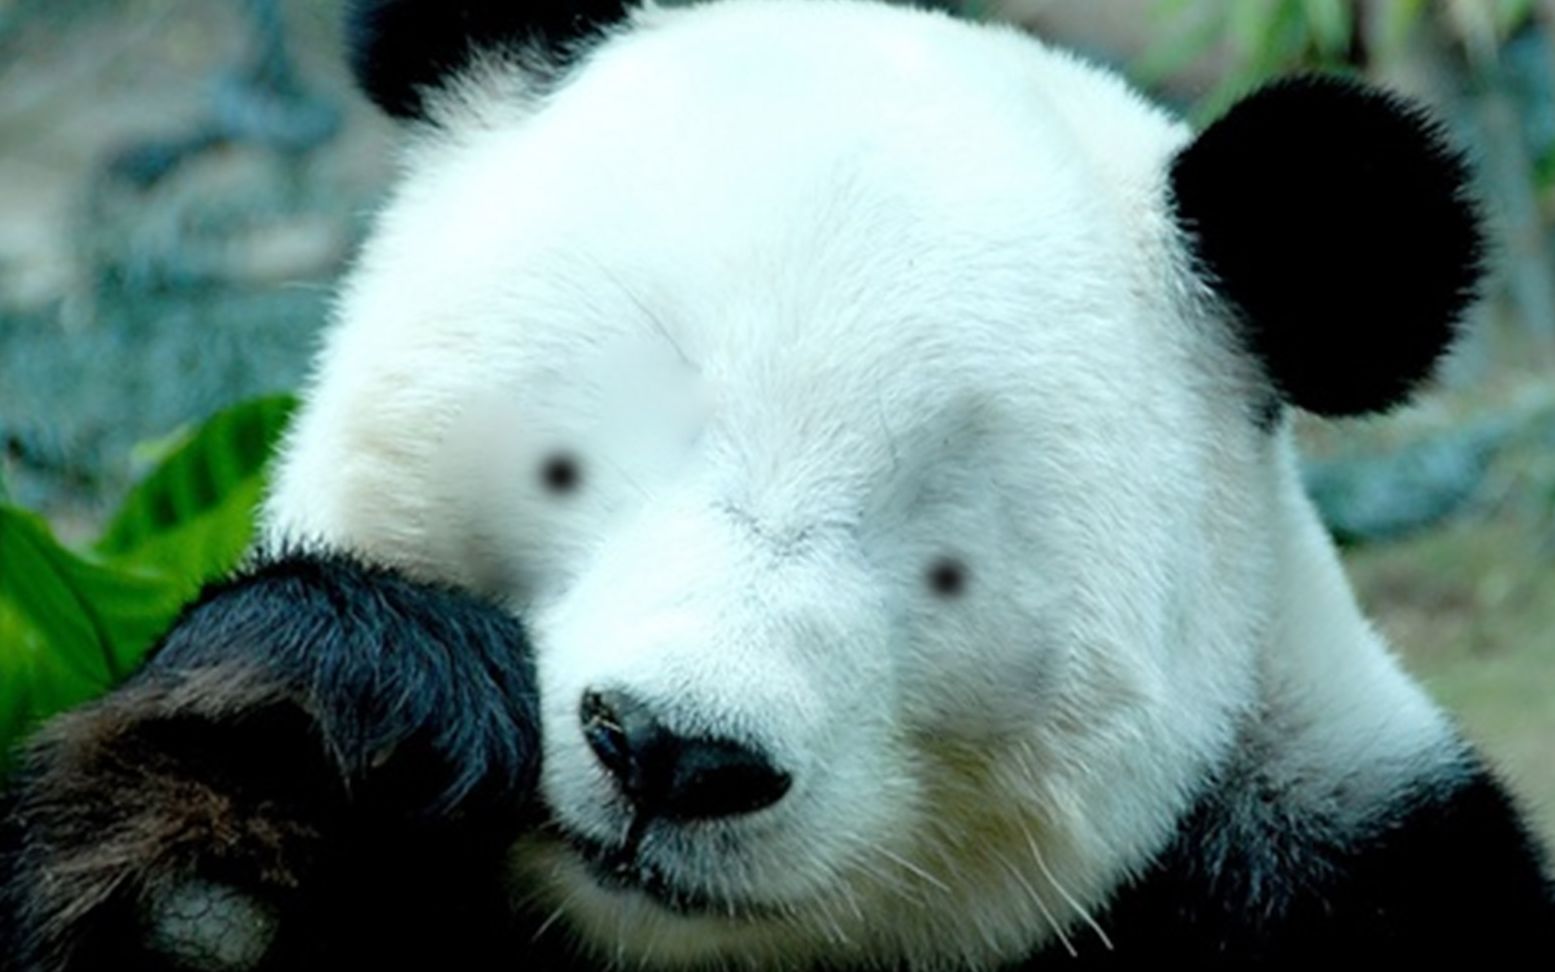 没有黑眼圈的熊猫表情图片